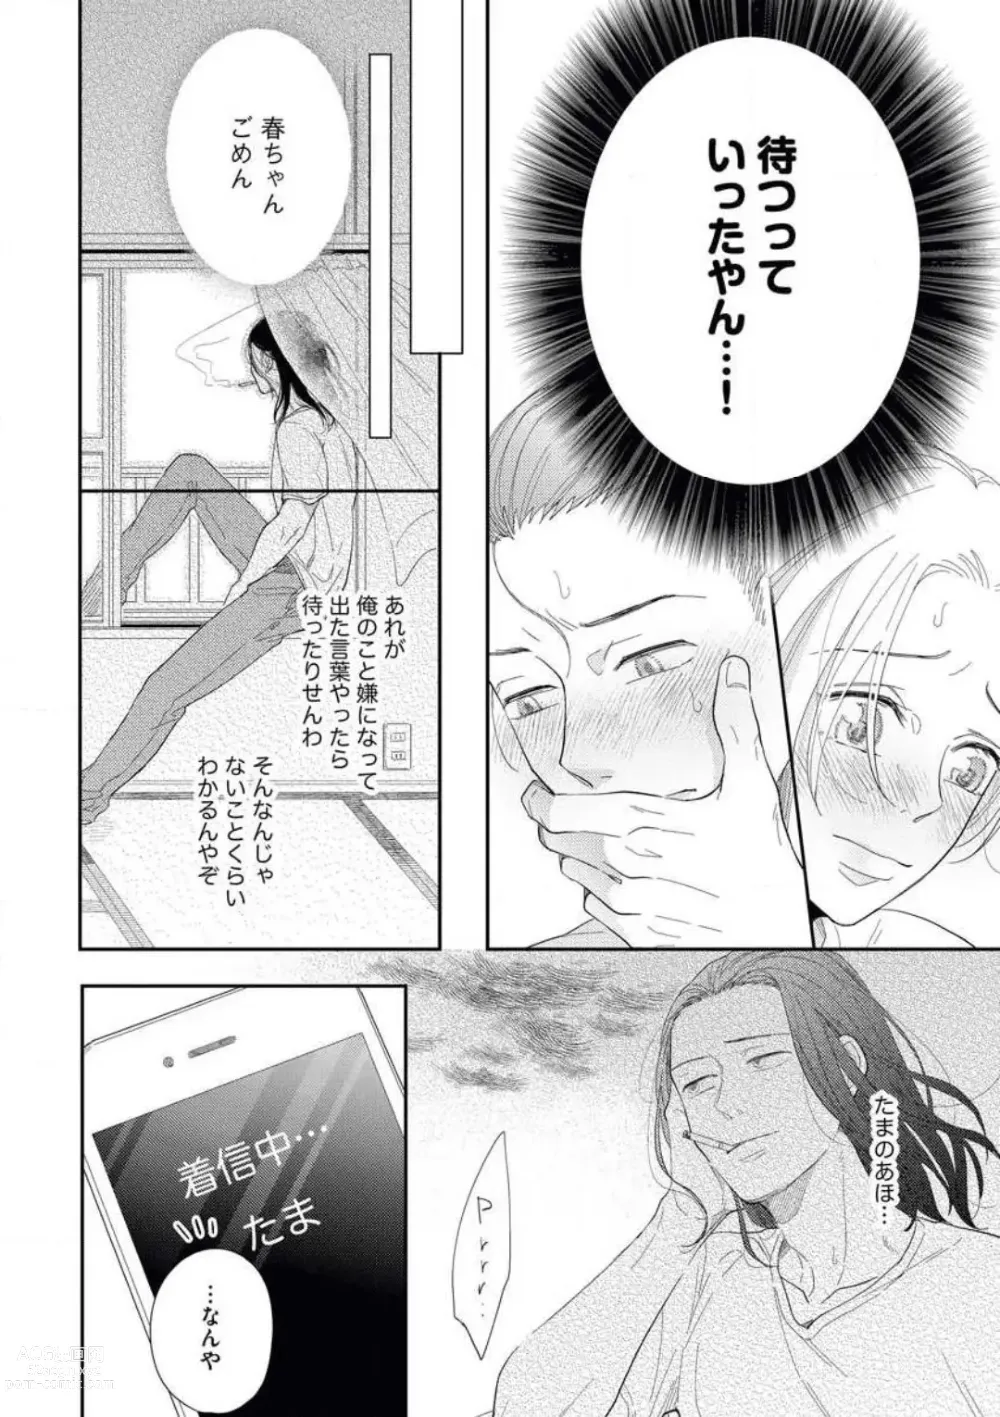 Page 22 of manga Zutto Matteru' Osananajimi to Gamandekinai Saikai Etchi